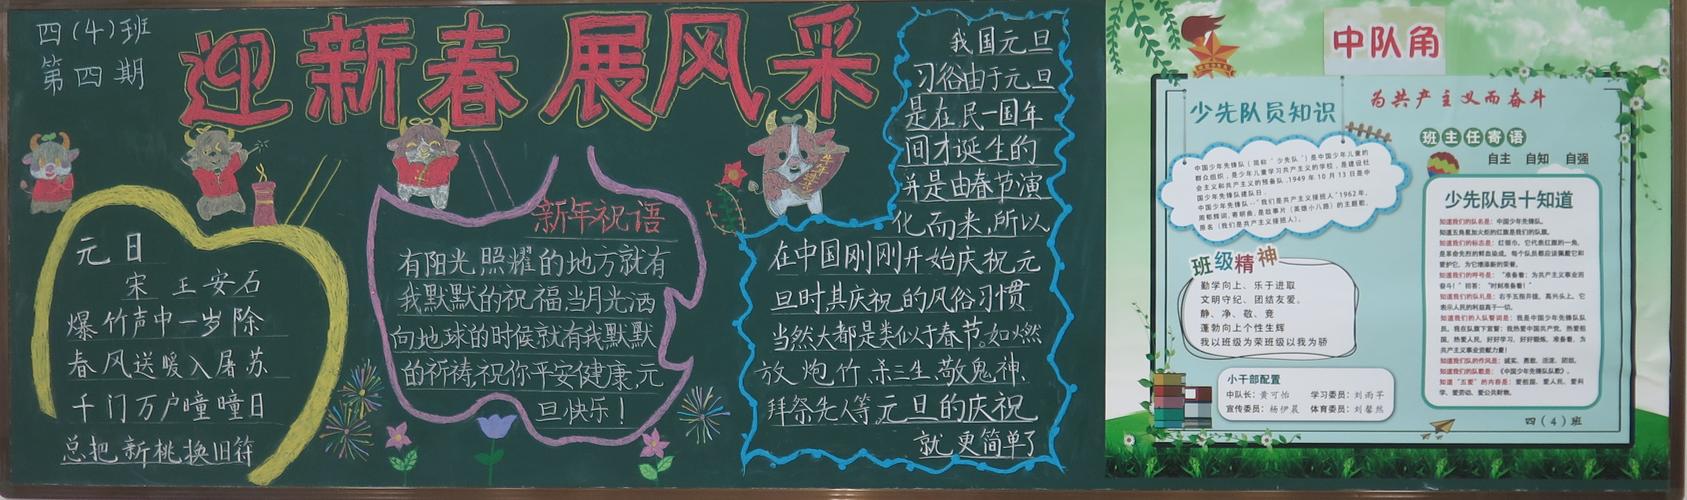 木棉湾学校第四期喜迎新年快乐出发优秀黑板报展示 - 美篇